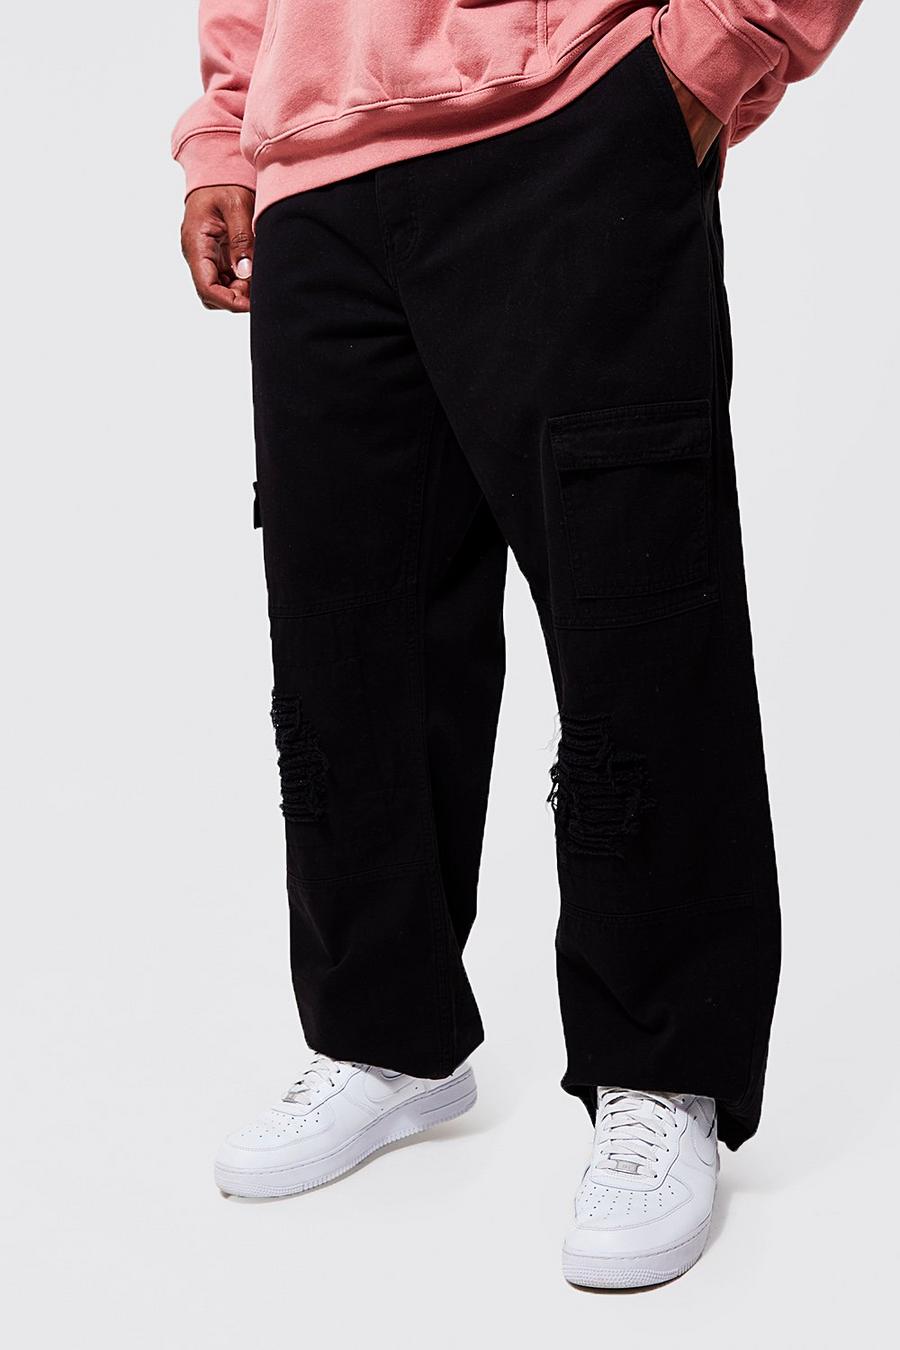 Pantaloni Cargo Plus Size dritti effetto smagliato, Black